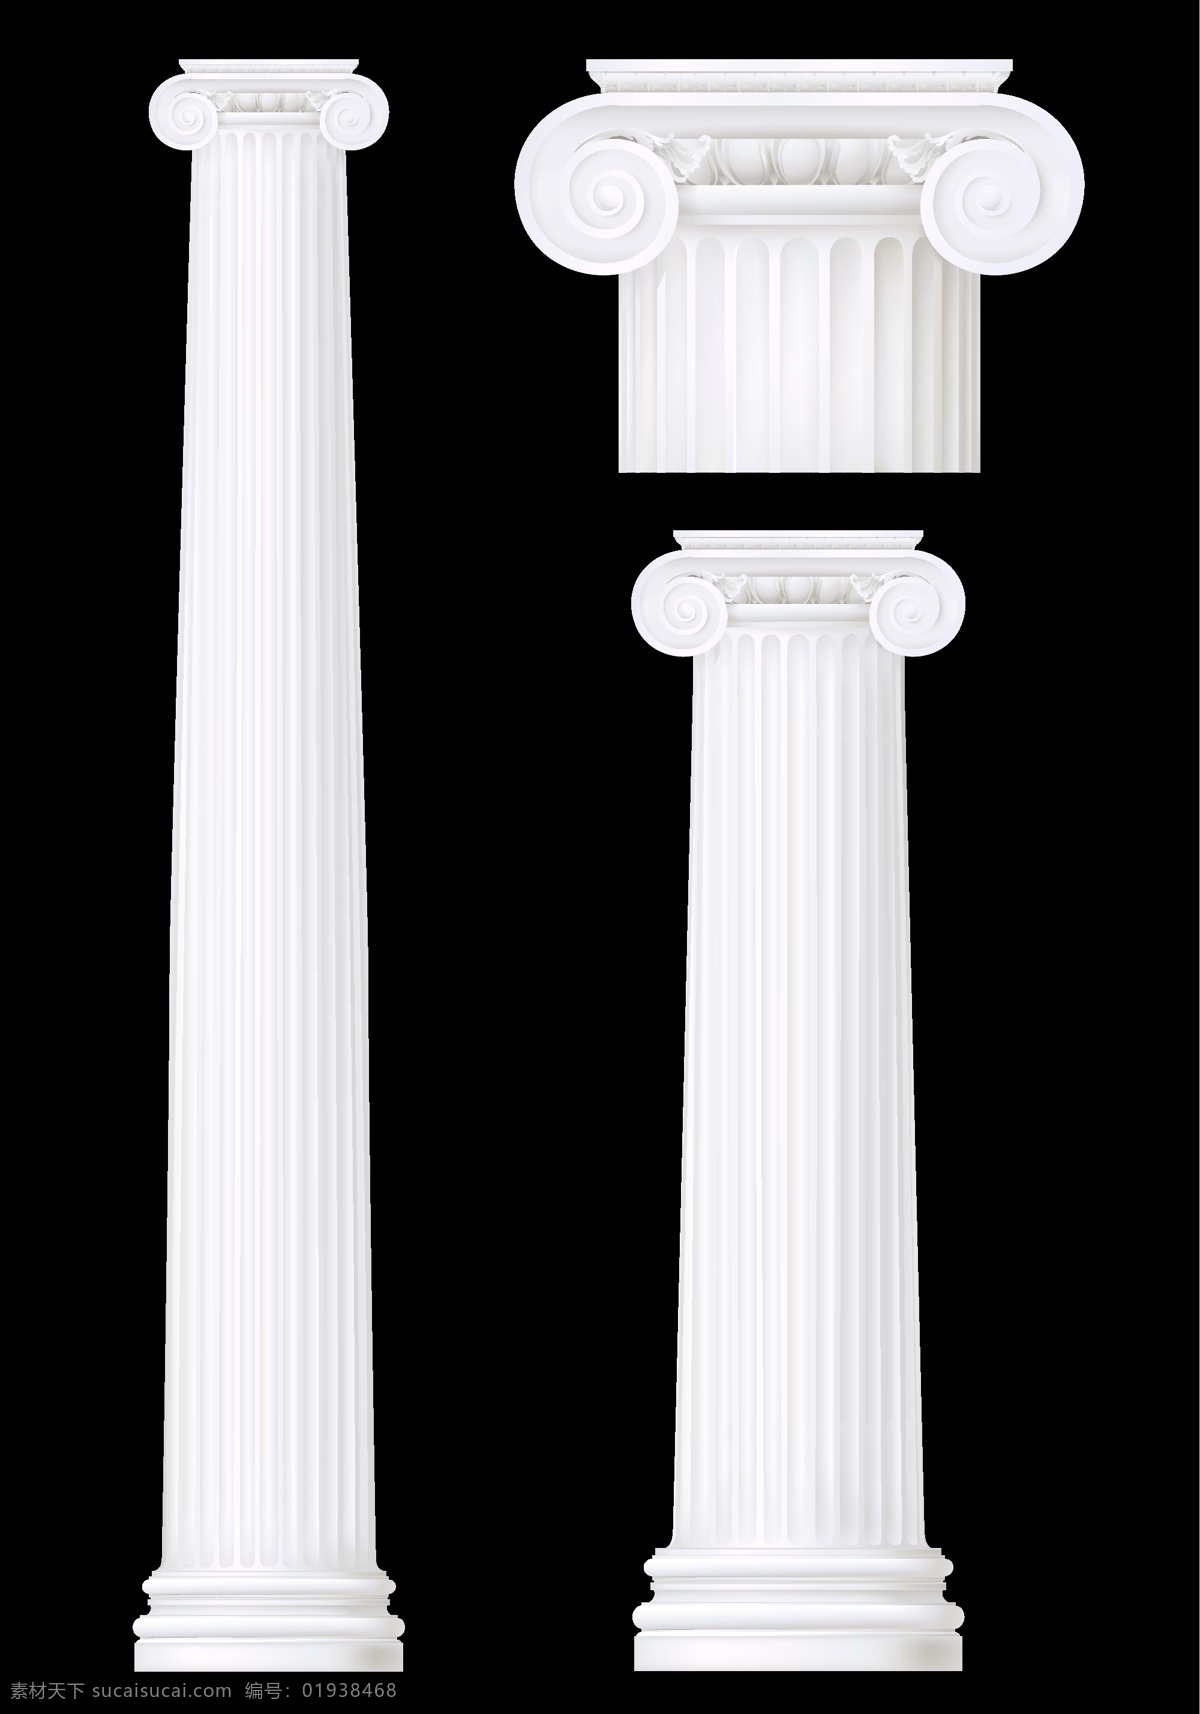 光滑 洁白 古罗马 柱 光滑洁白 古罗马柱 柱子 建筑 生活百科 矢量素材 黑色